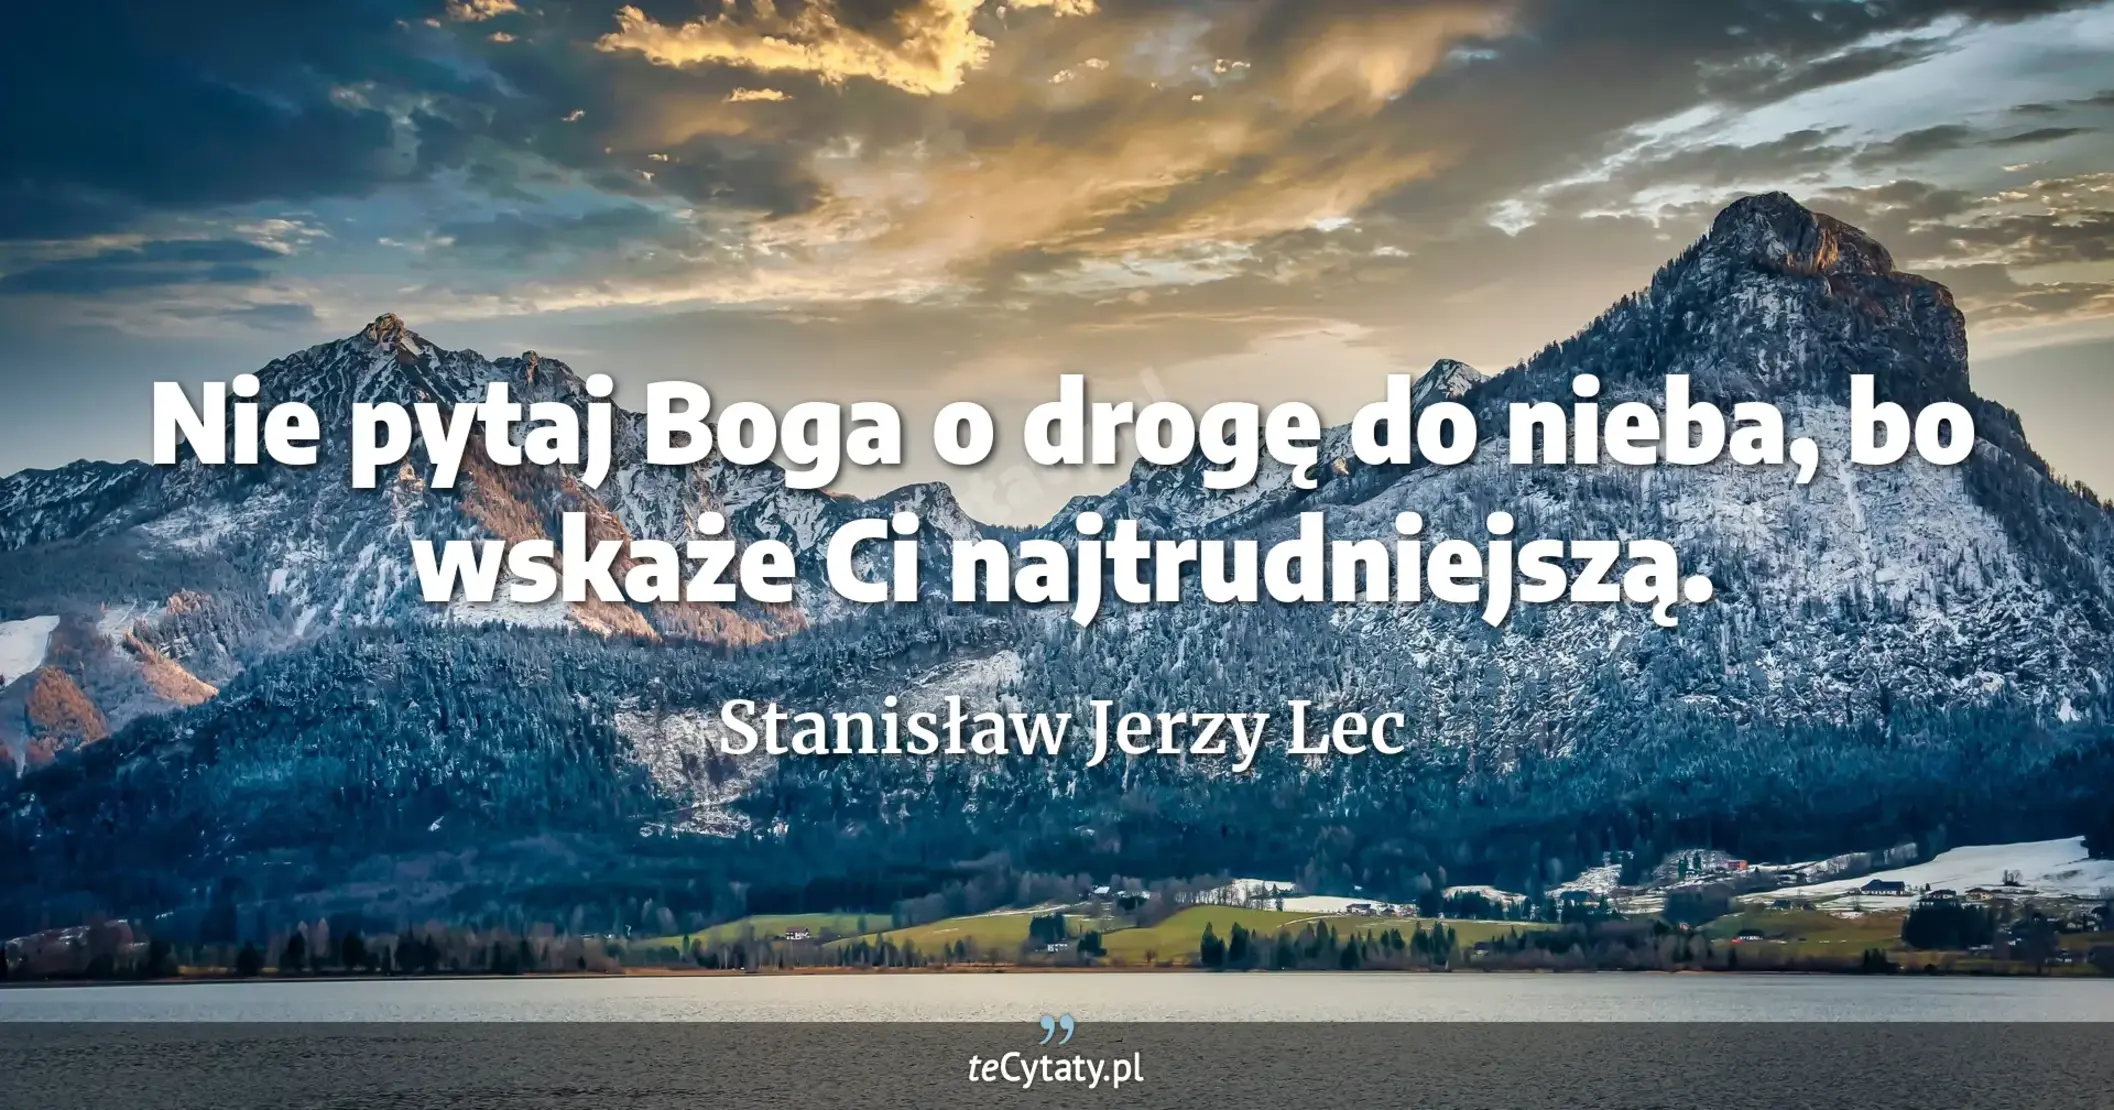 Nie pytaj Boga o drogę do nieba, bo wskaże Ci najtrudniejszą. - Stanisław Jerzy Lec